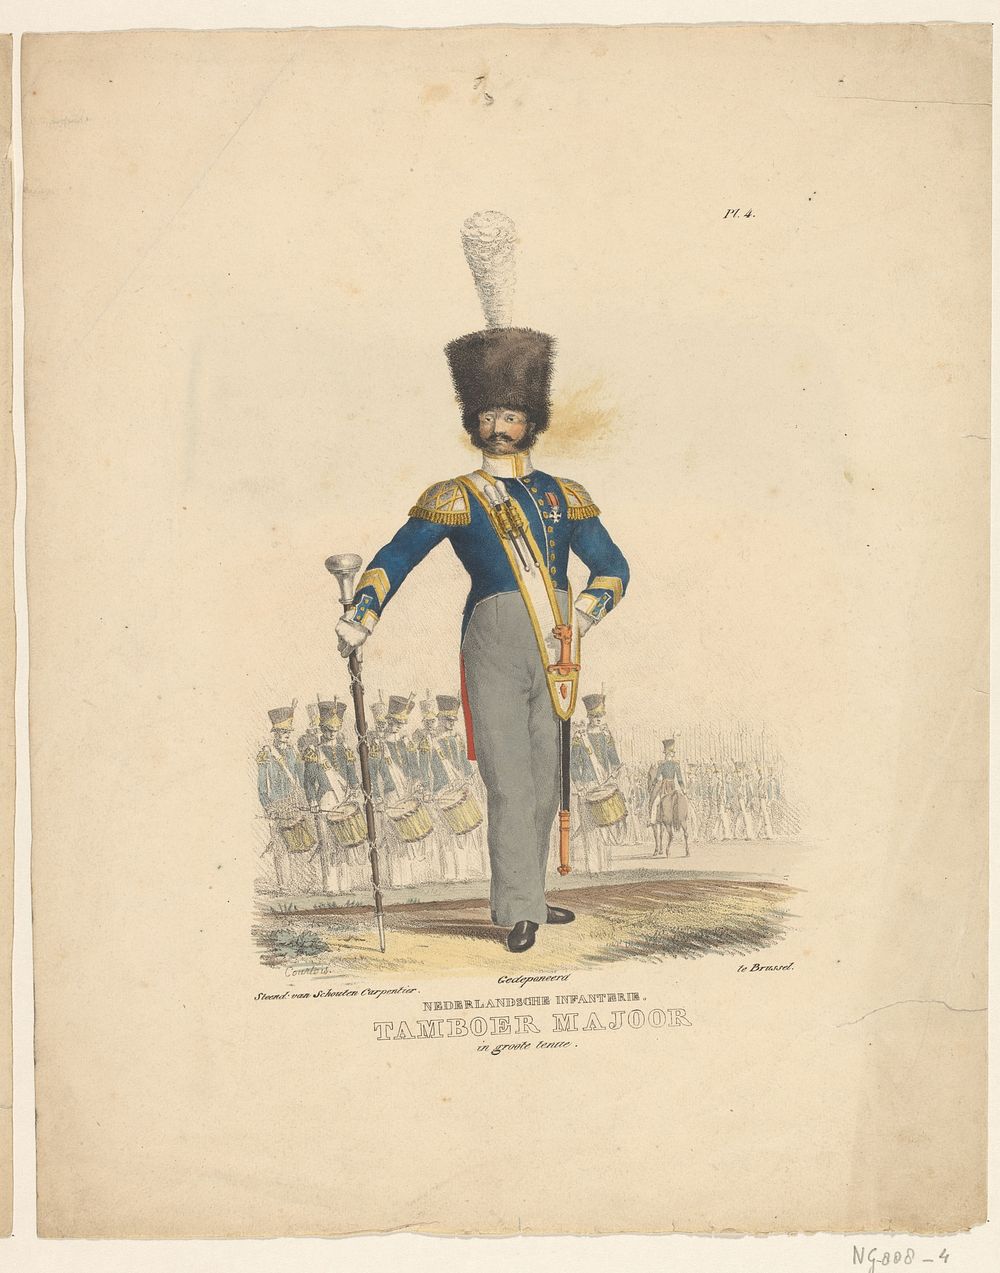 Nederlandsche Infanterie. Tamboer Majoor in groote tenue (1823 - 1827) by Courtois and Schouten Carpentier